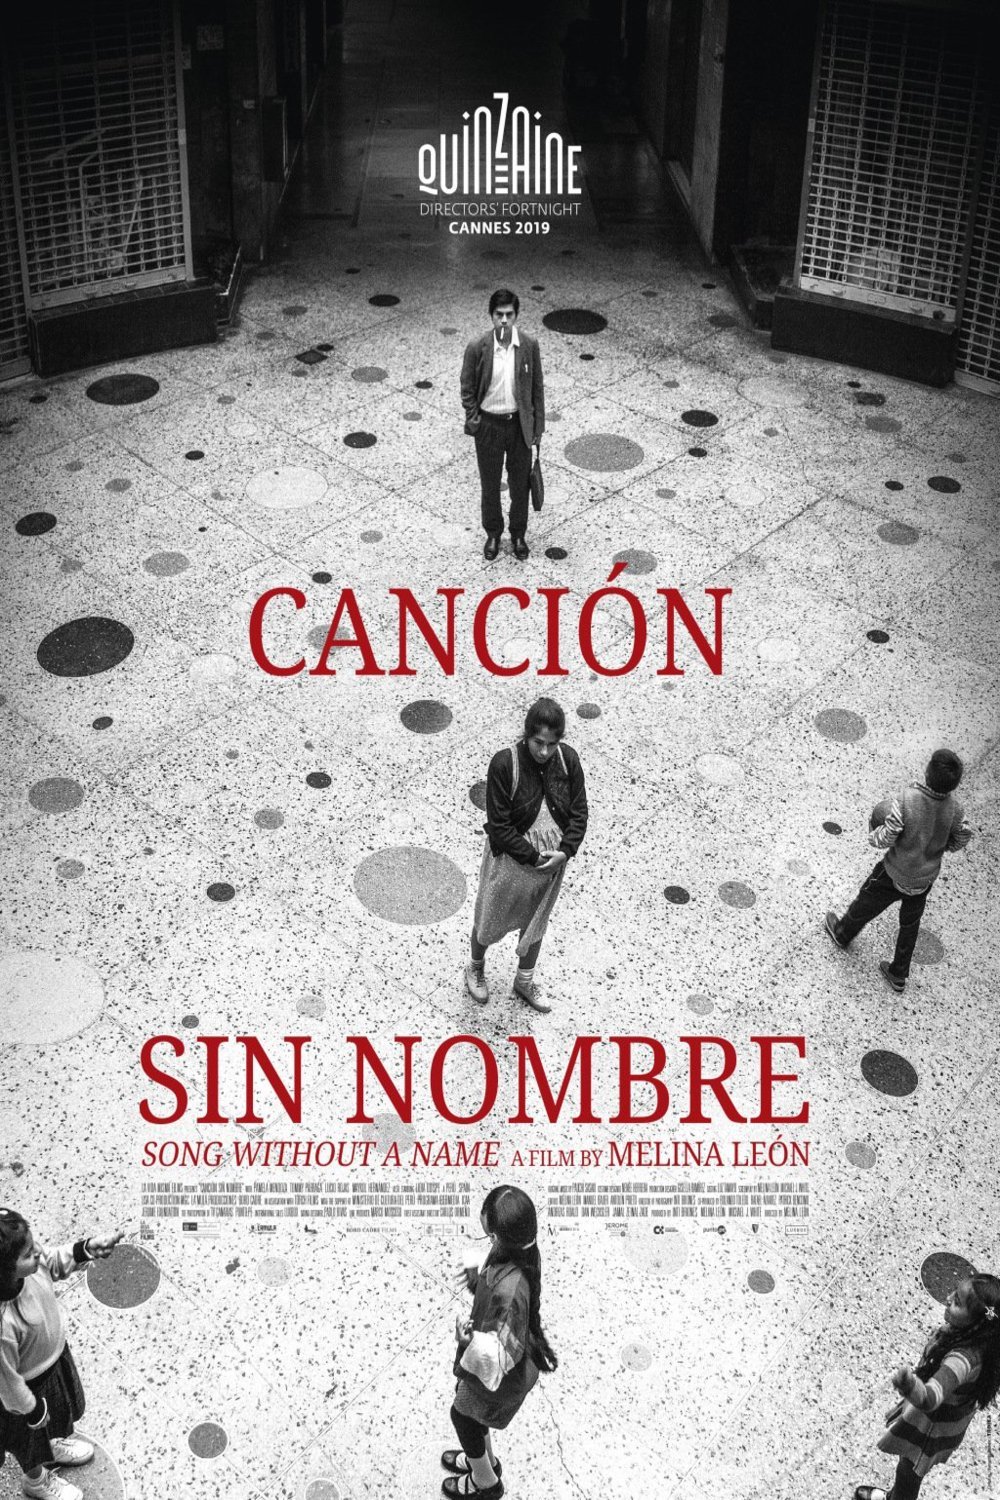 L'affiche originale du film Canción sin nombre en espagnol